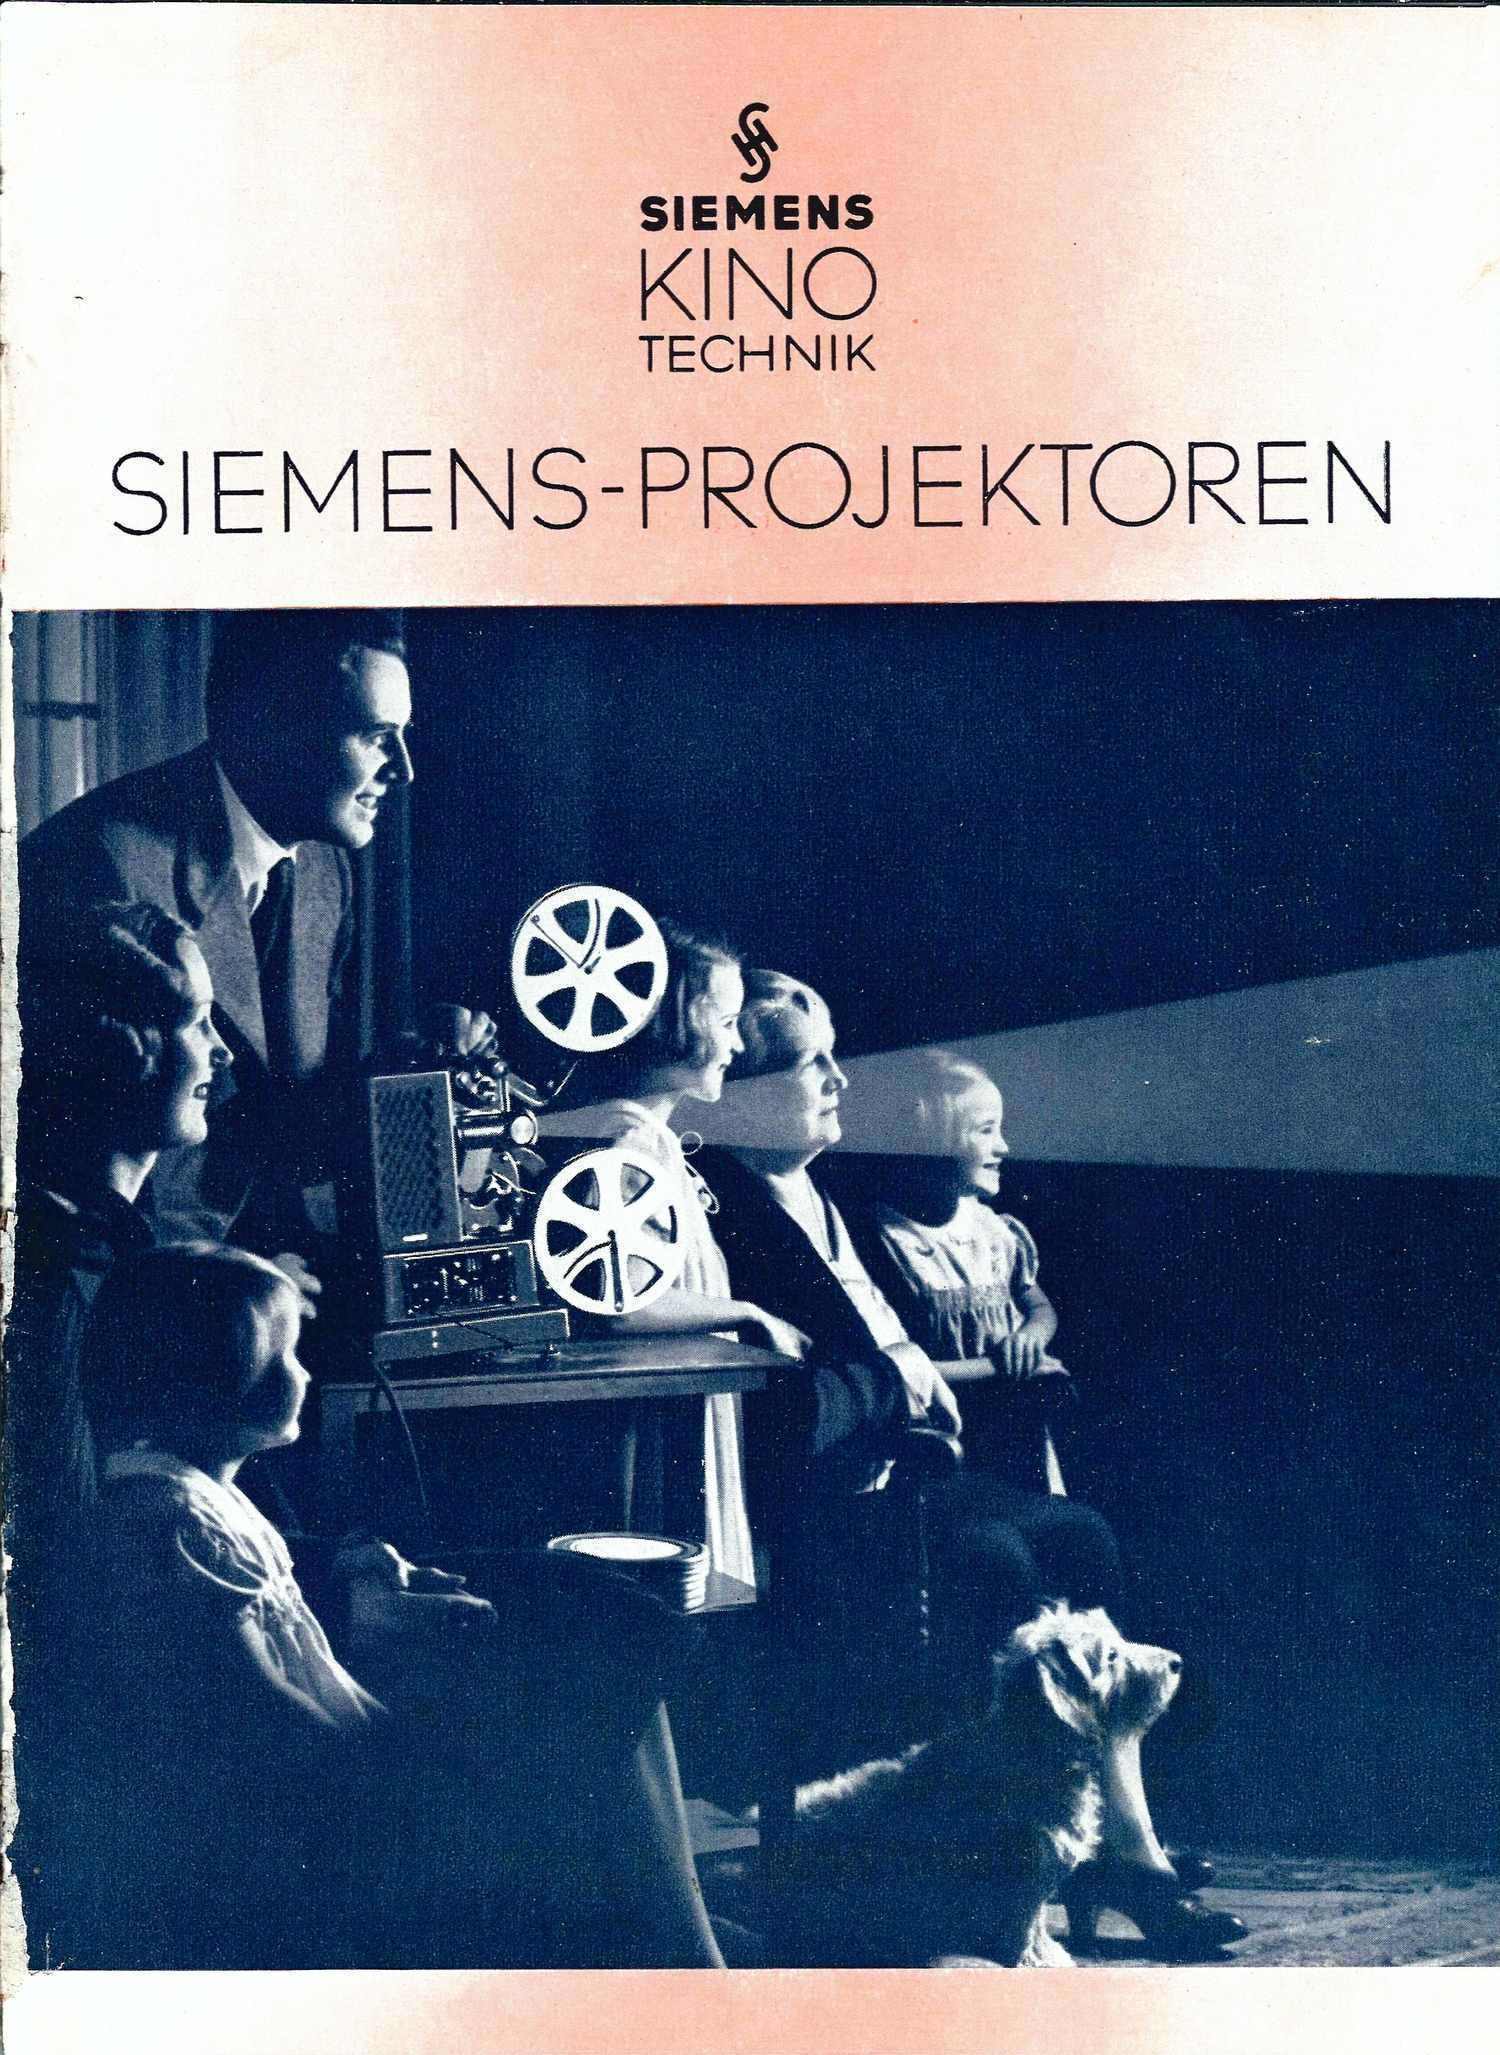 Рекламный проспект кинопроекторов фирмы «Сименс». Германия, конец 1940-х - начало 1950-х годов.